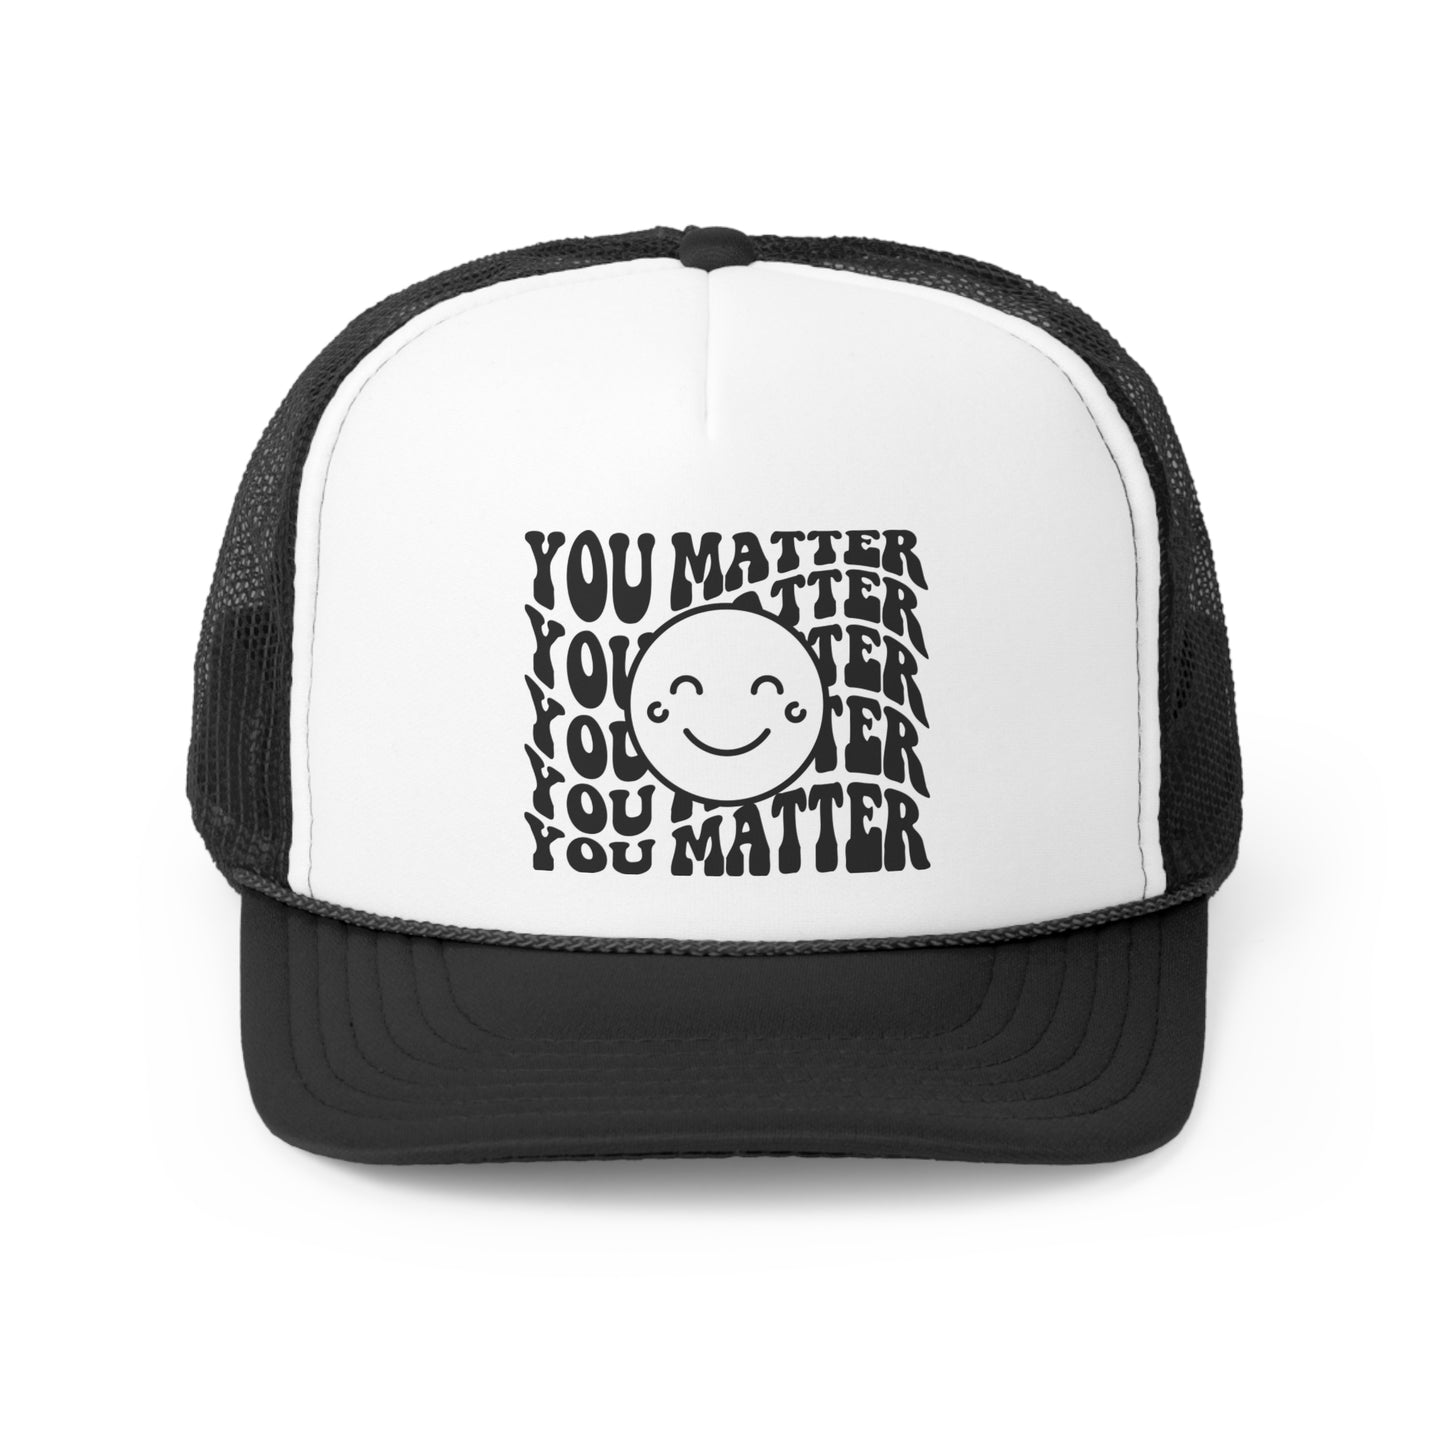 You Matter Tall Trucker Caps